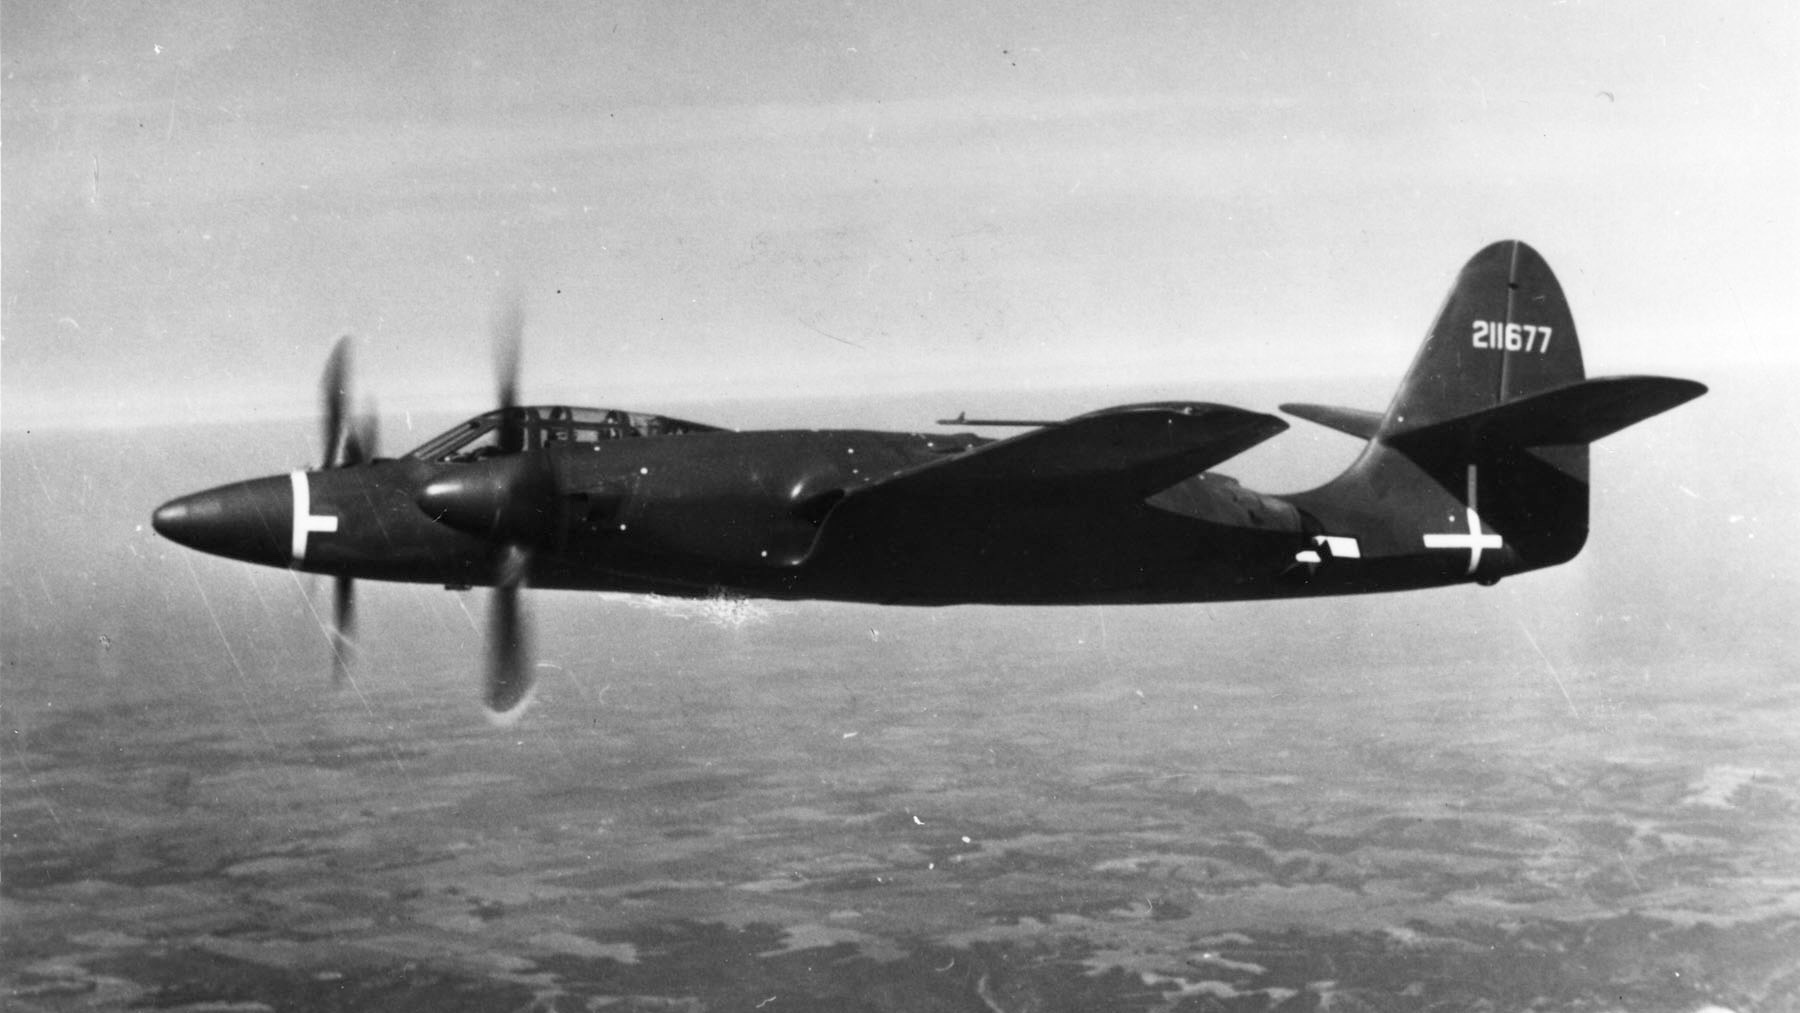 XP-67 in flight